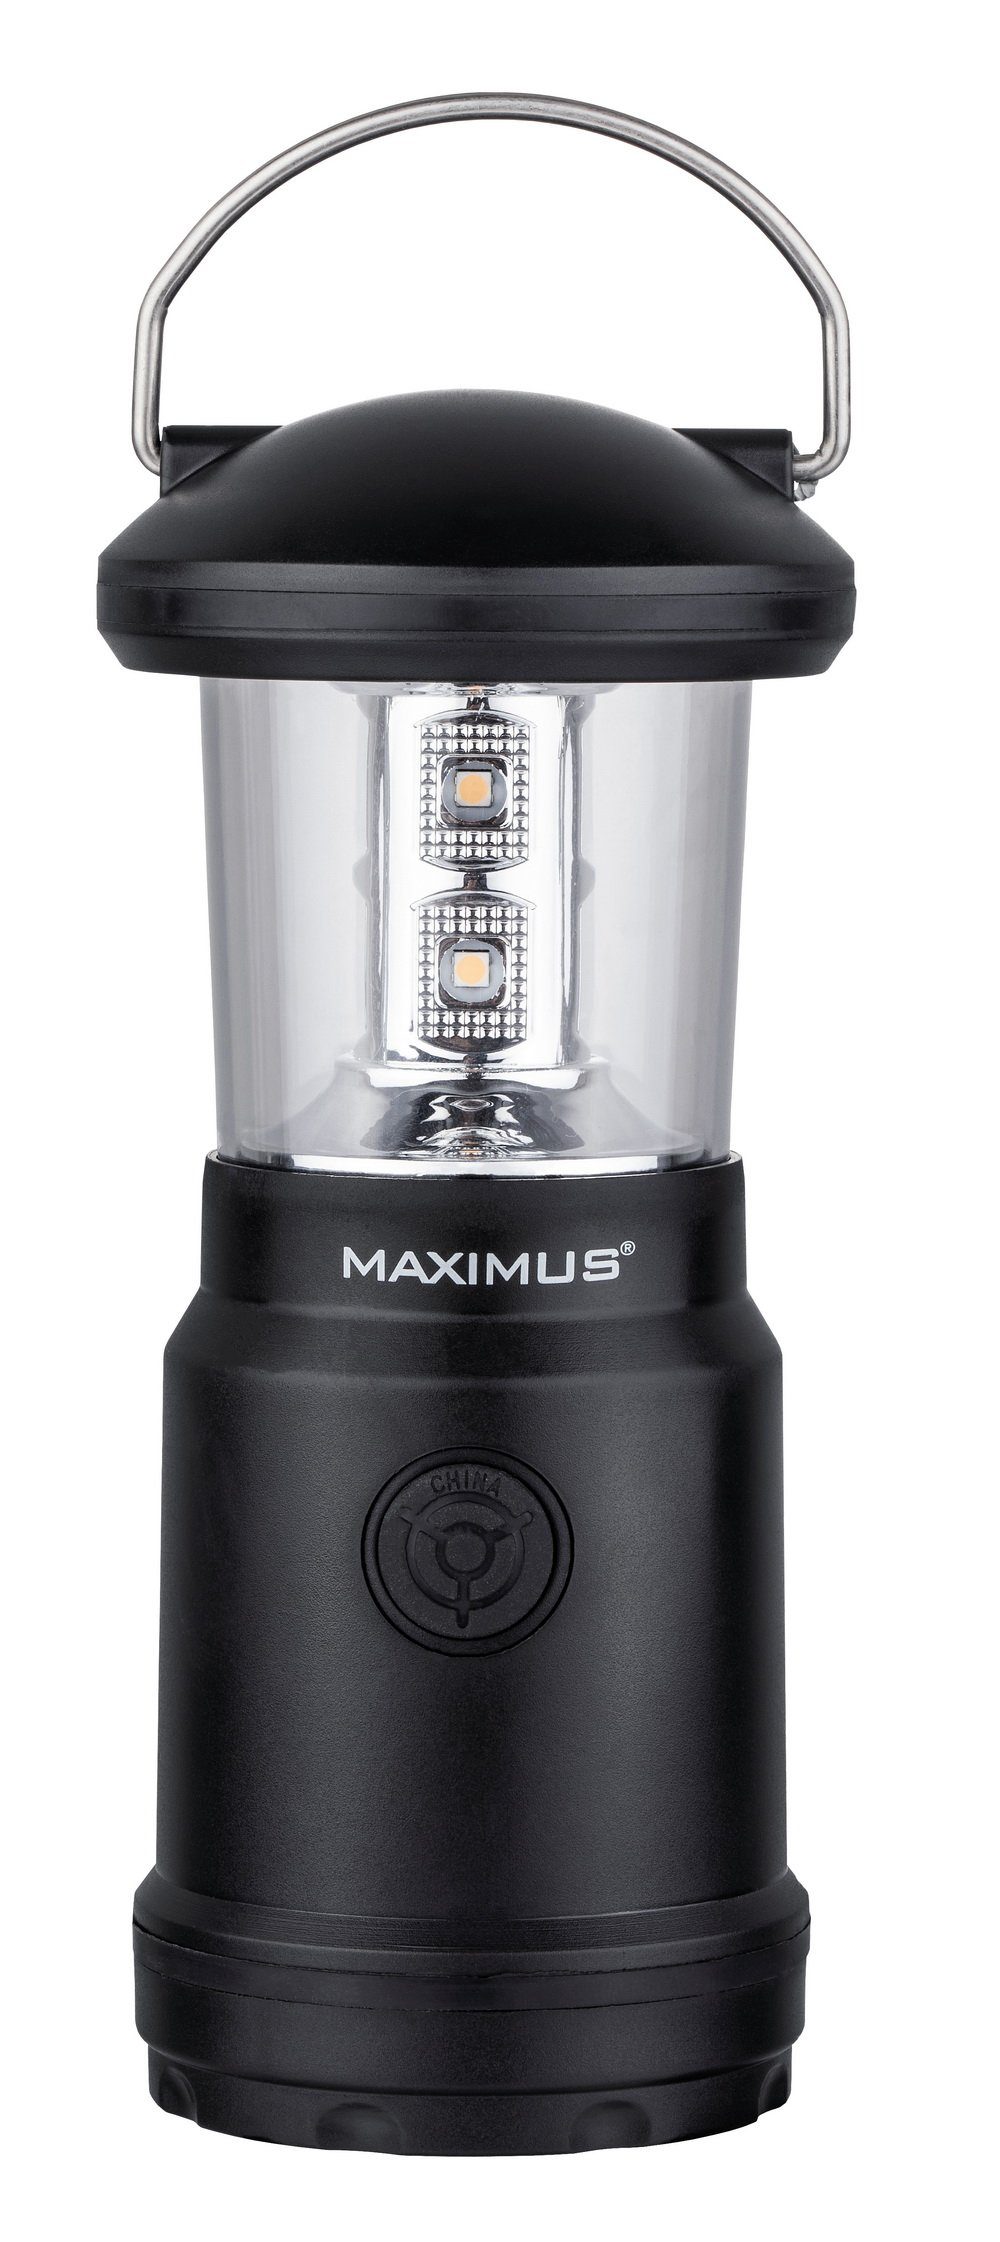 Maximus Laterne 350 lm LED-Camping-Leuchte M-LNT-20-DU mit Aufhängung, wetterfest IPX4, 2 Helligkeitsstufen